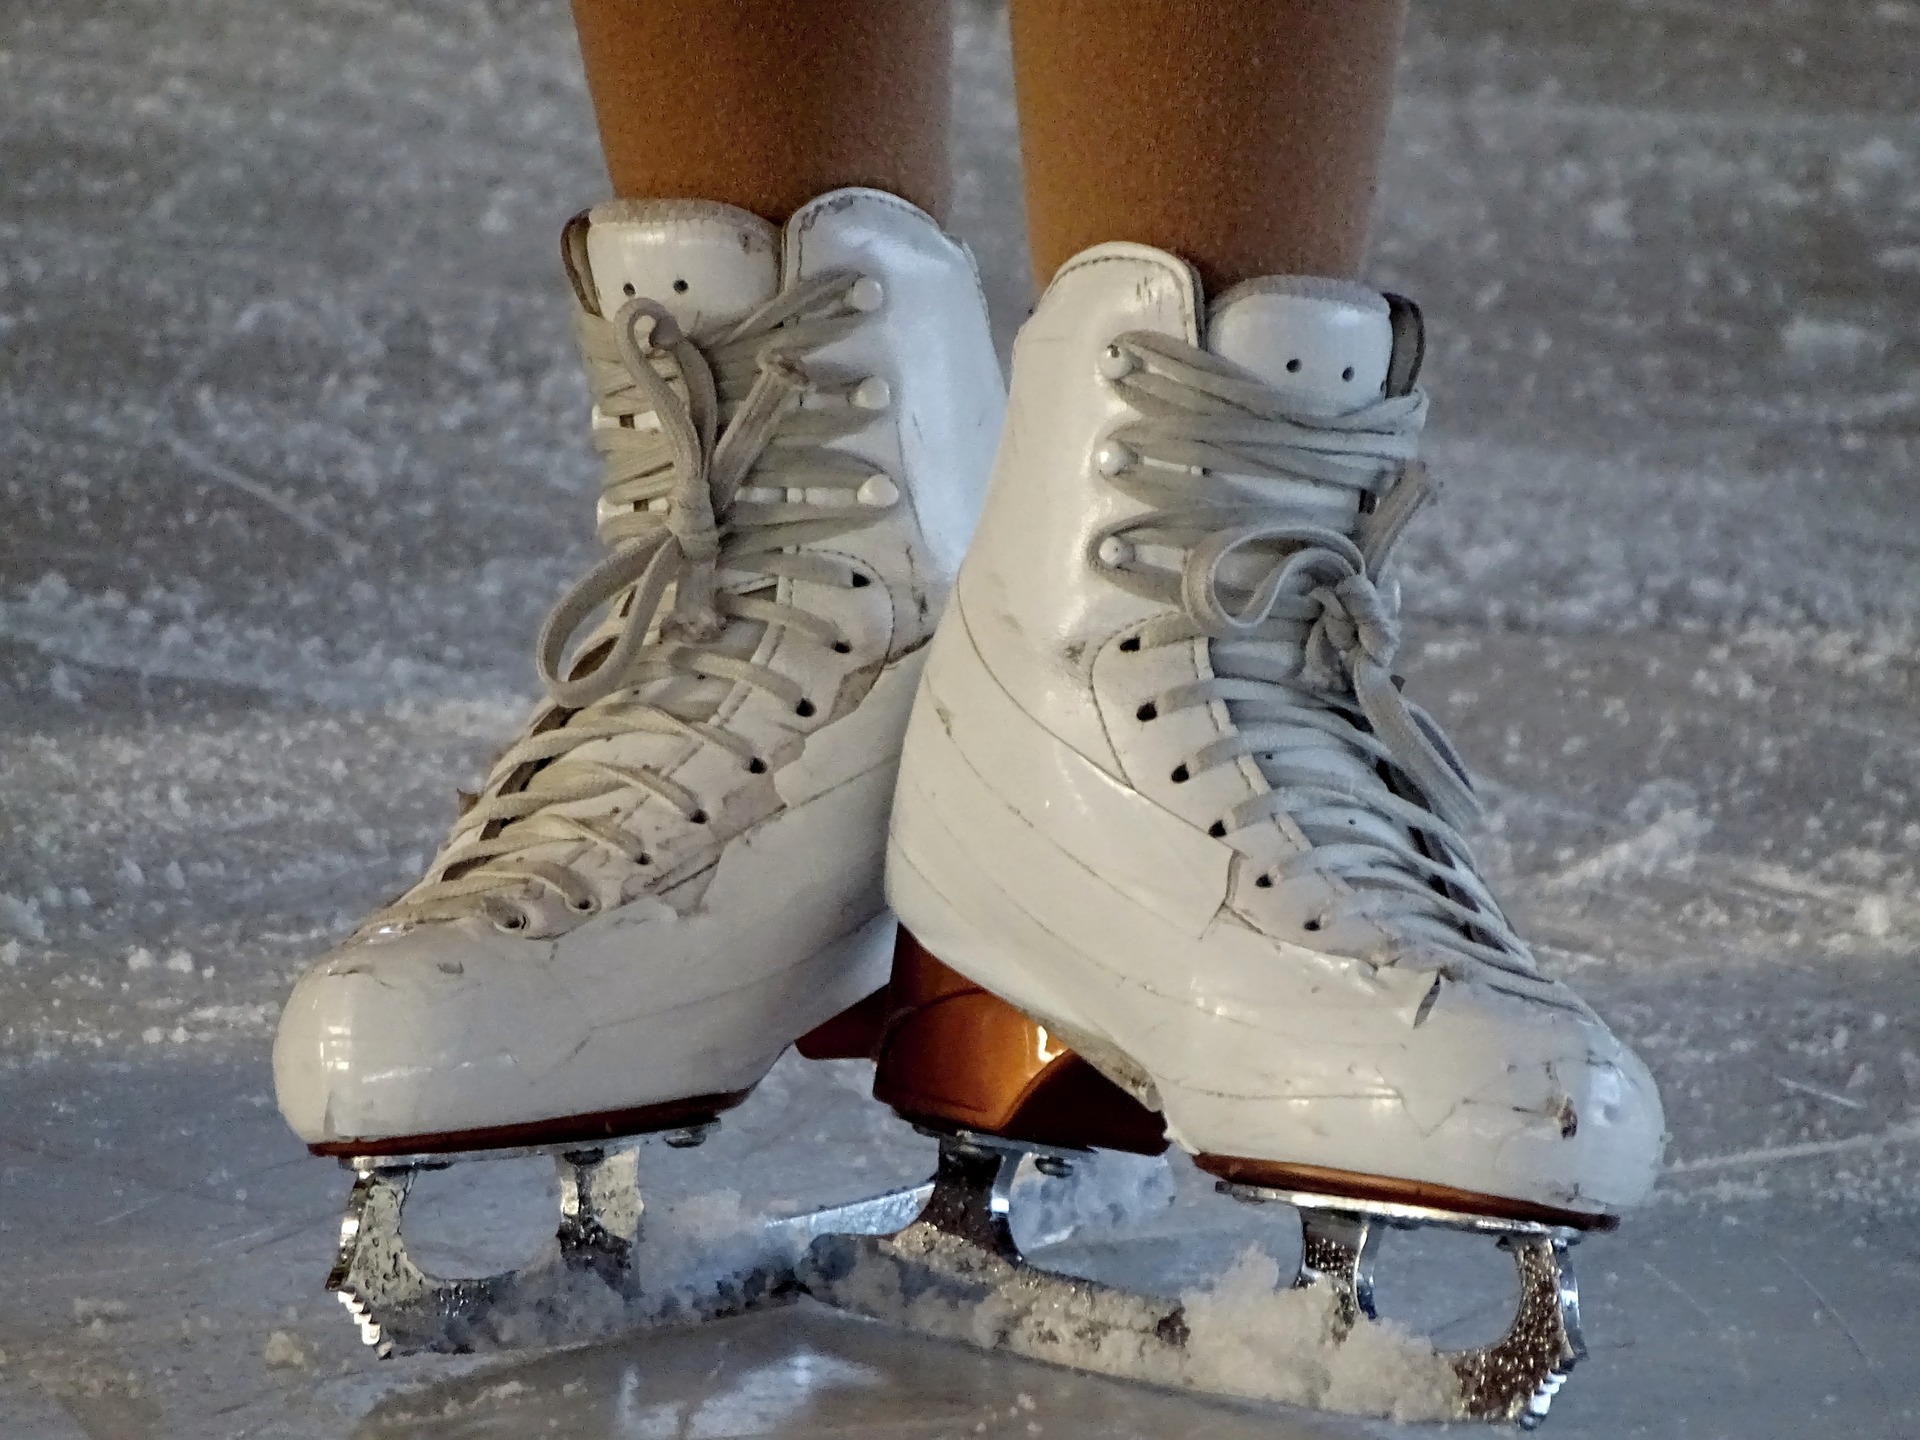 Ice Skates on Ice